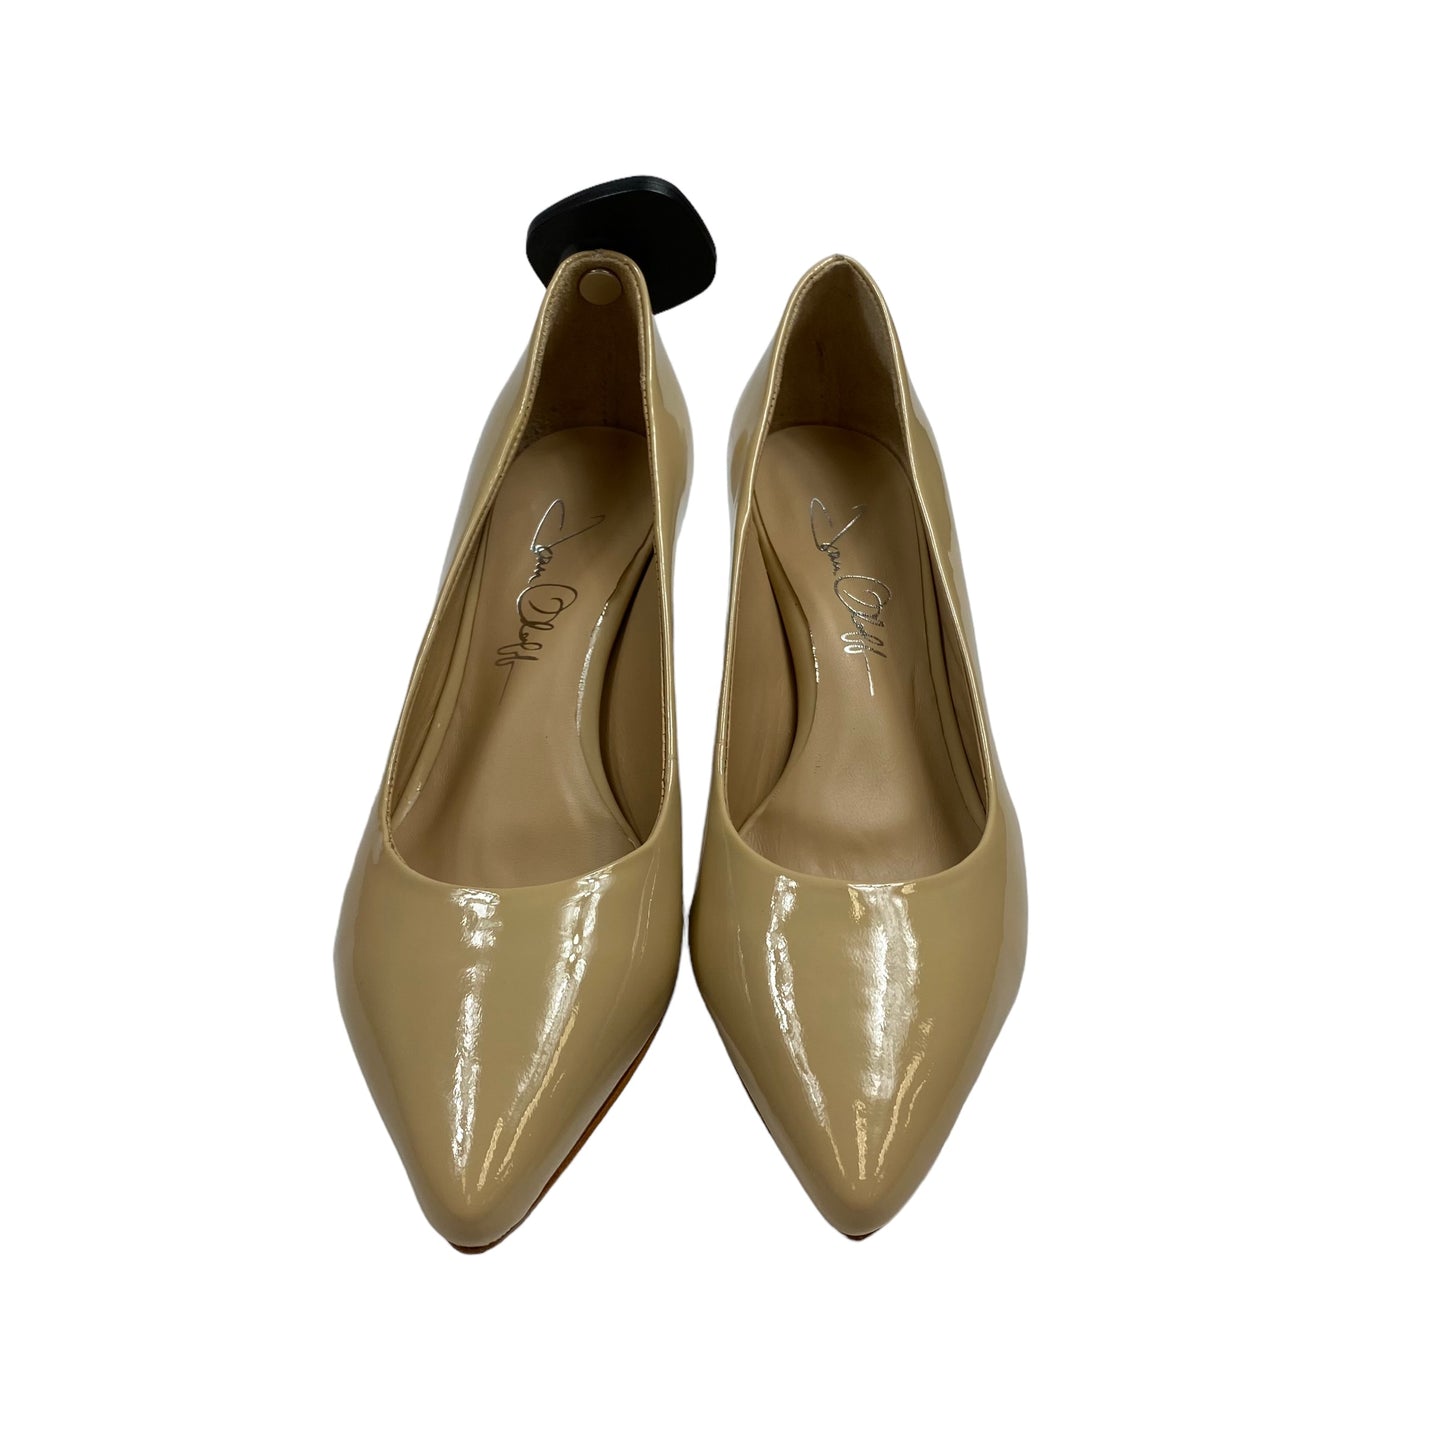 Shoes Heels Kitten By Joan Oloff  Size: 5.5